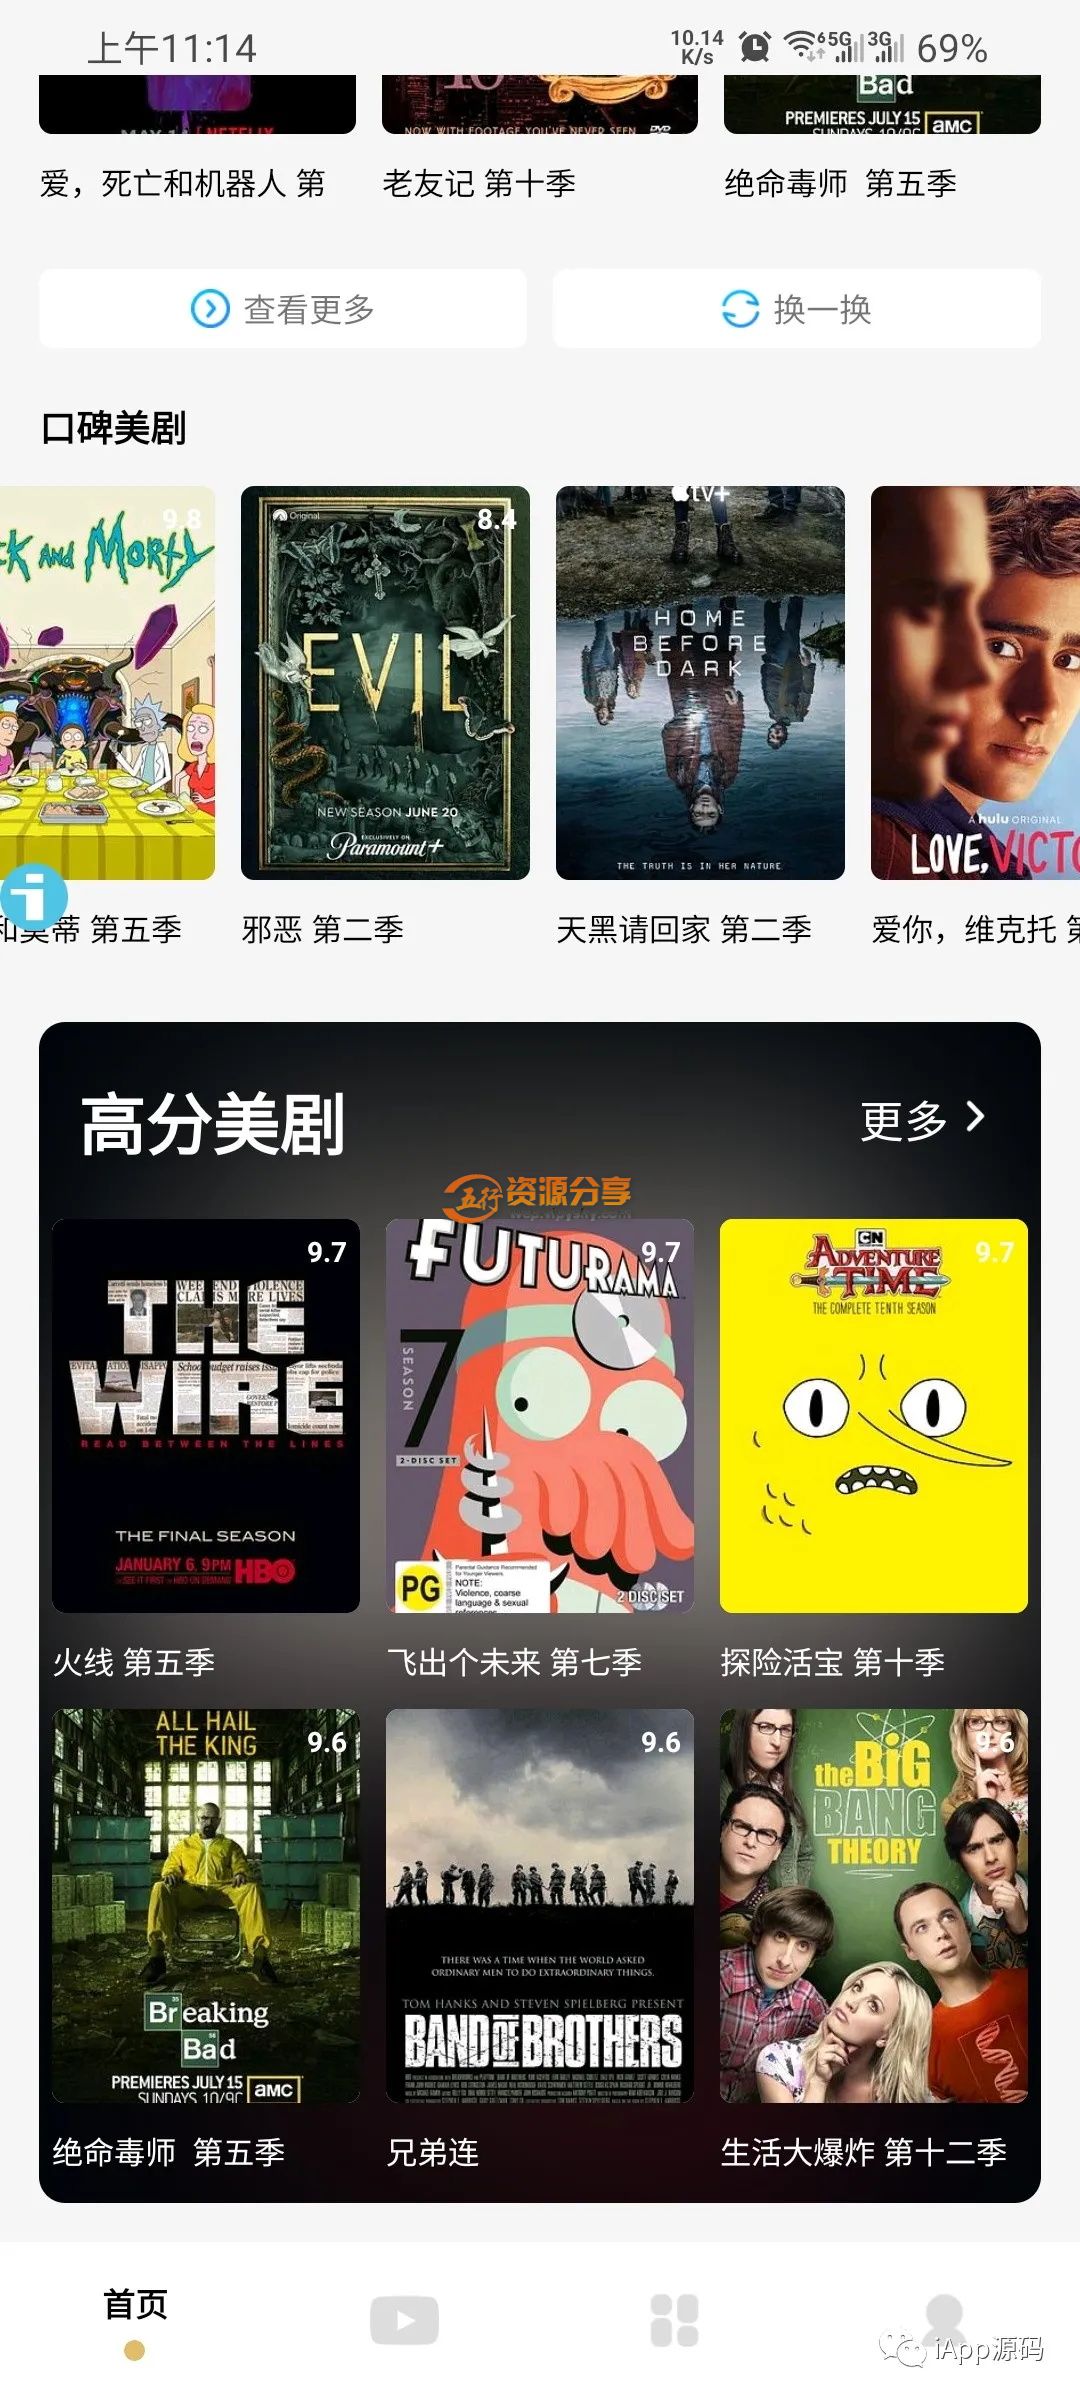 iApp村夫-影院追剧-v5源码，支持豆瓣电影、自动背景ui、横向电影列表-图片